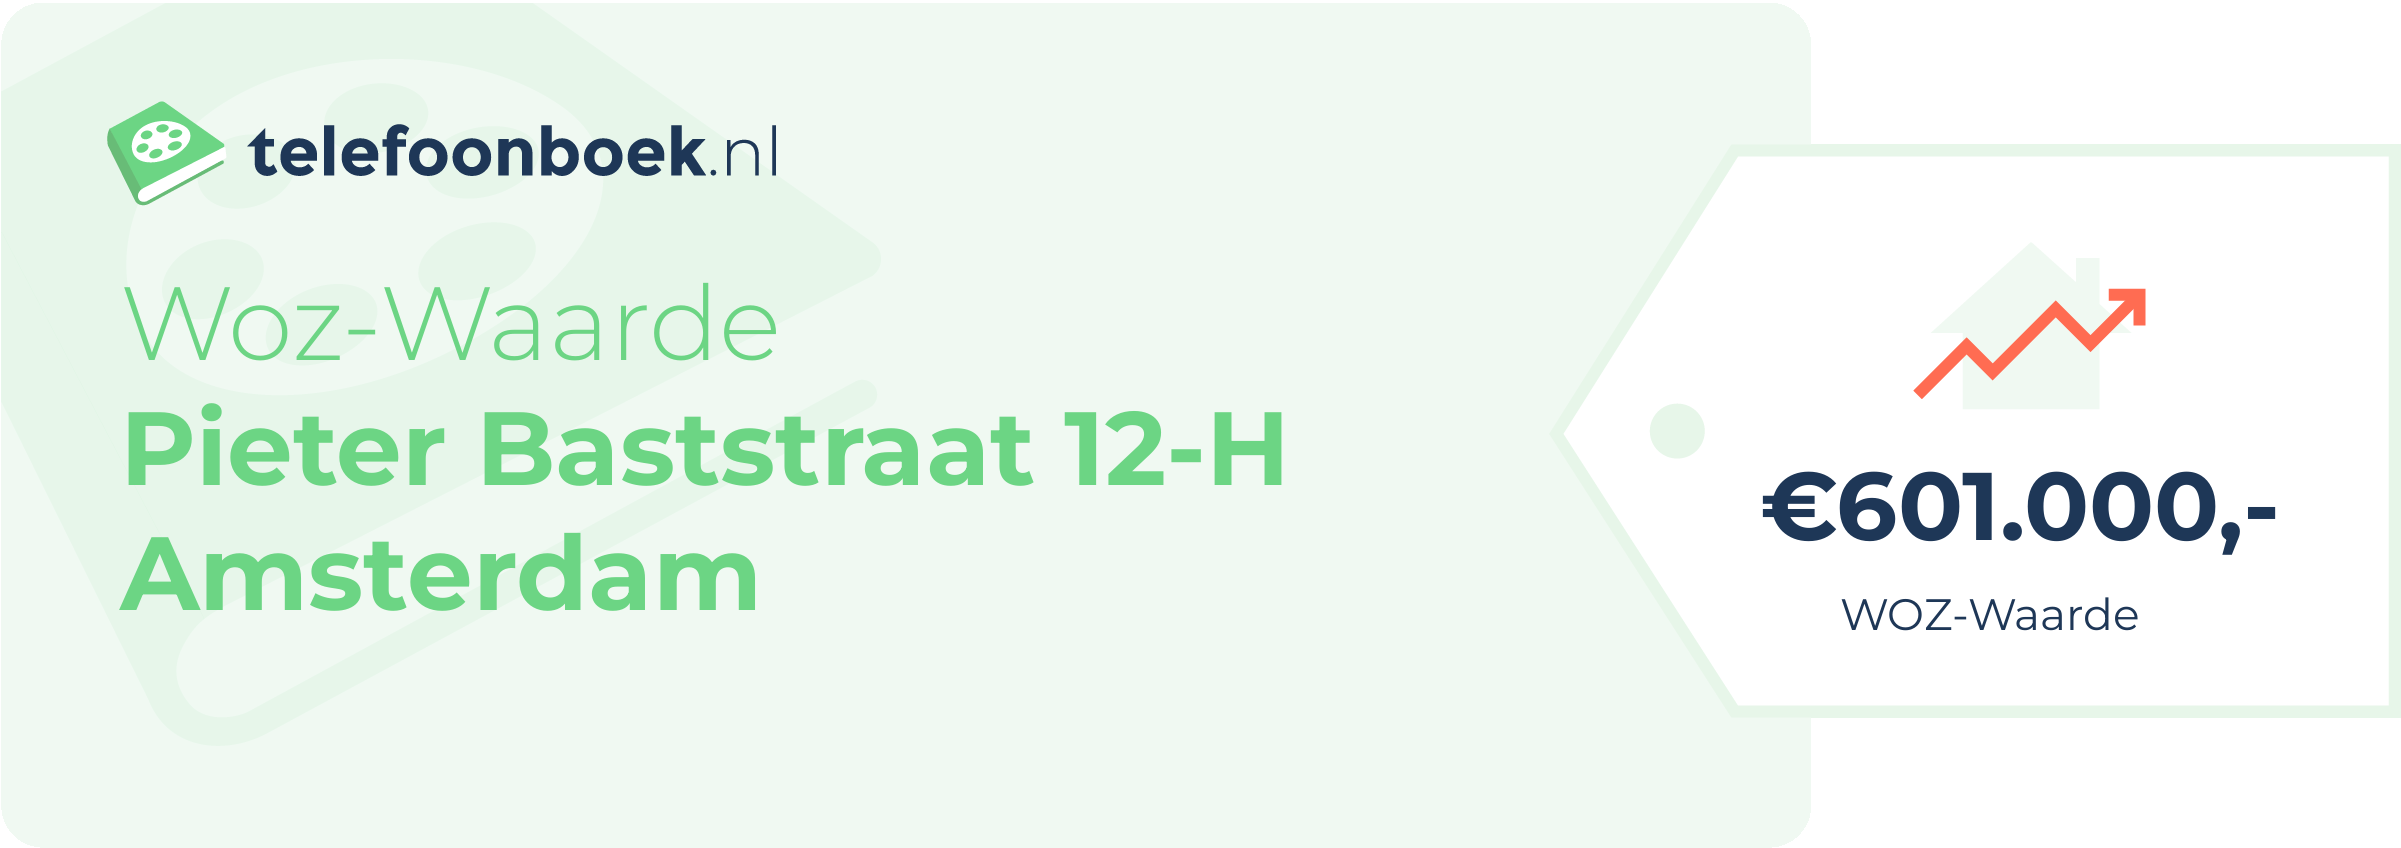 WOZ-waarde Pieter Baststraat 12-H Amsterdam